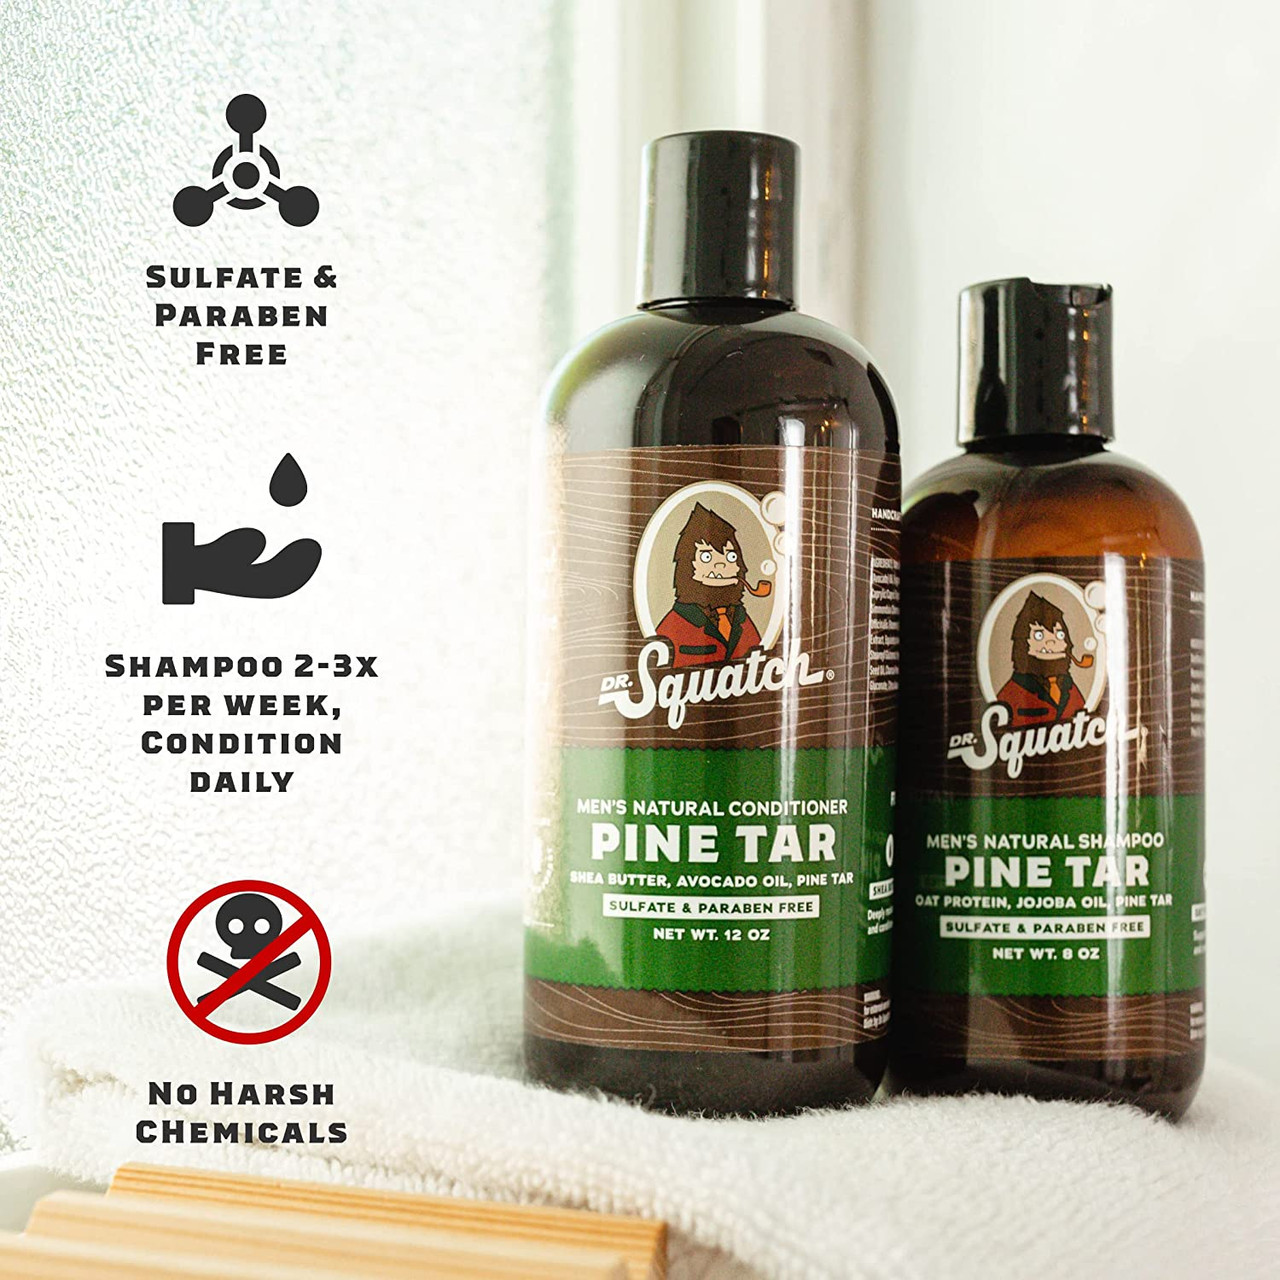 Dr. Squatch Men's Soap Sampler Pack (3 Bars) – Pine Tar, Cedar Citrus, –  BABACLICK